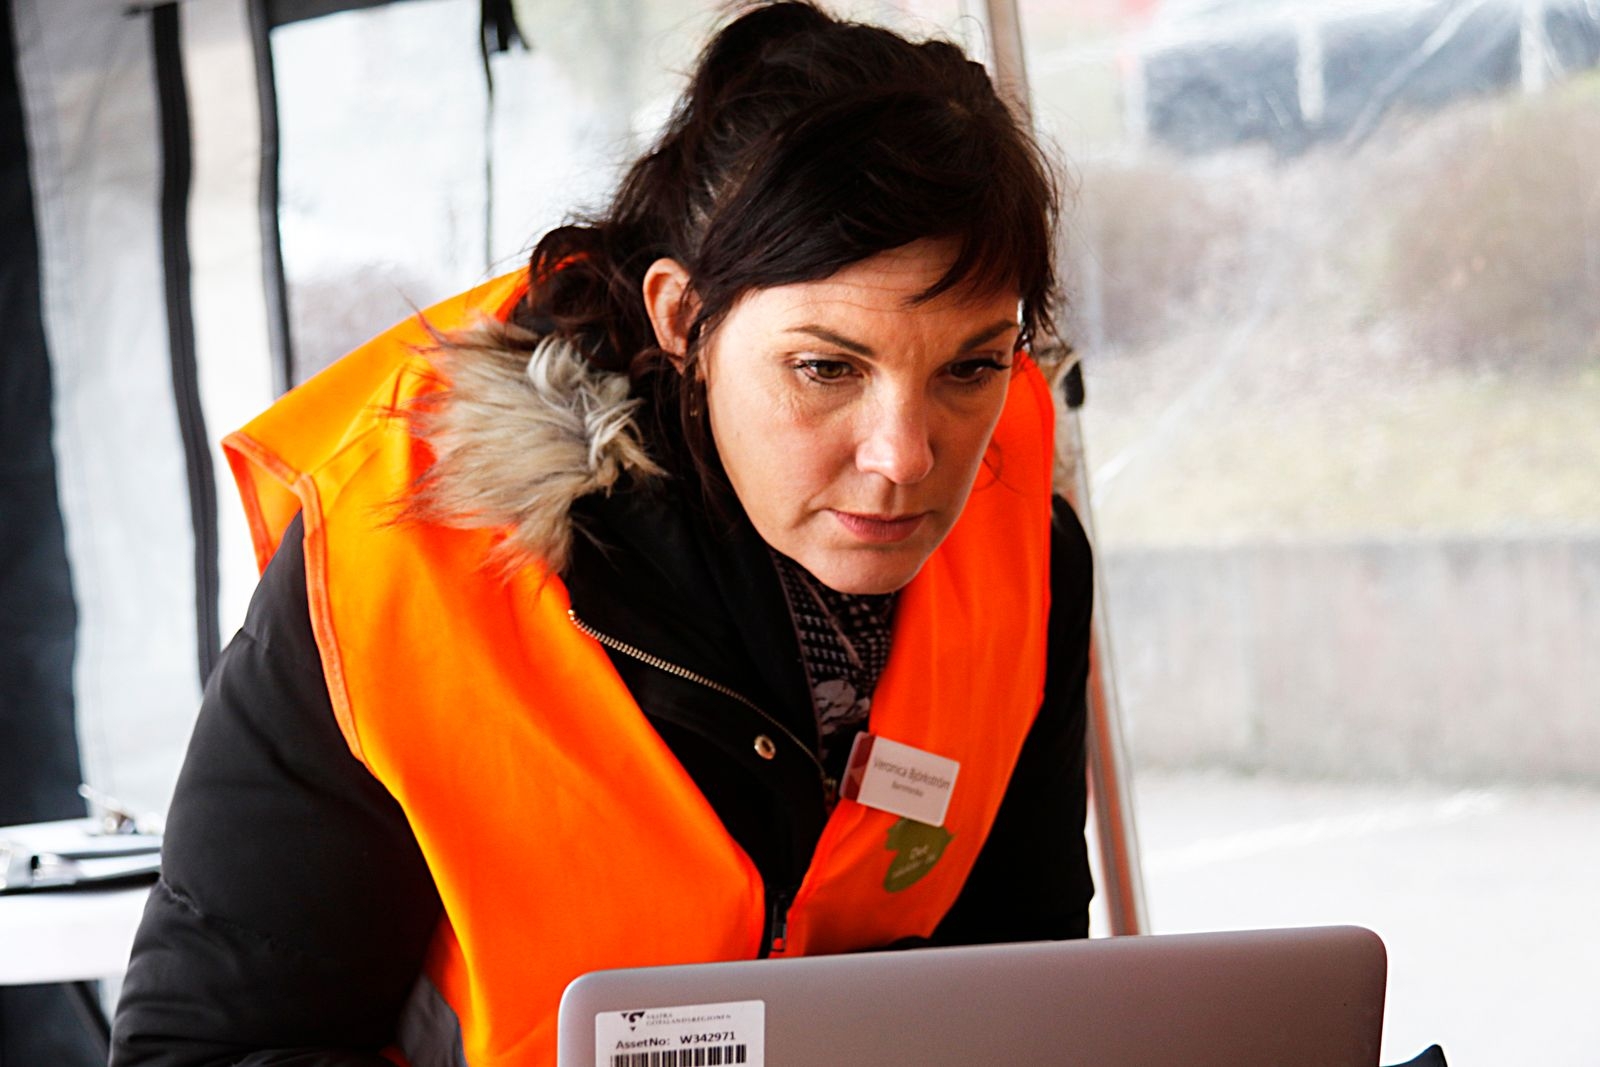 Veronica Björkström jobbar som barnmorska i bland annat Ulricehamn. Innan undersökningen kollar hon upp personen i en databas för att se om det är dags att ta cellprov.